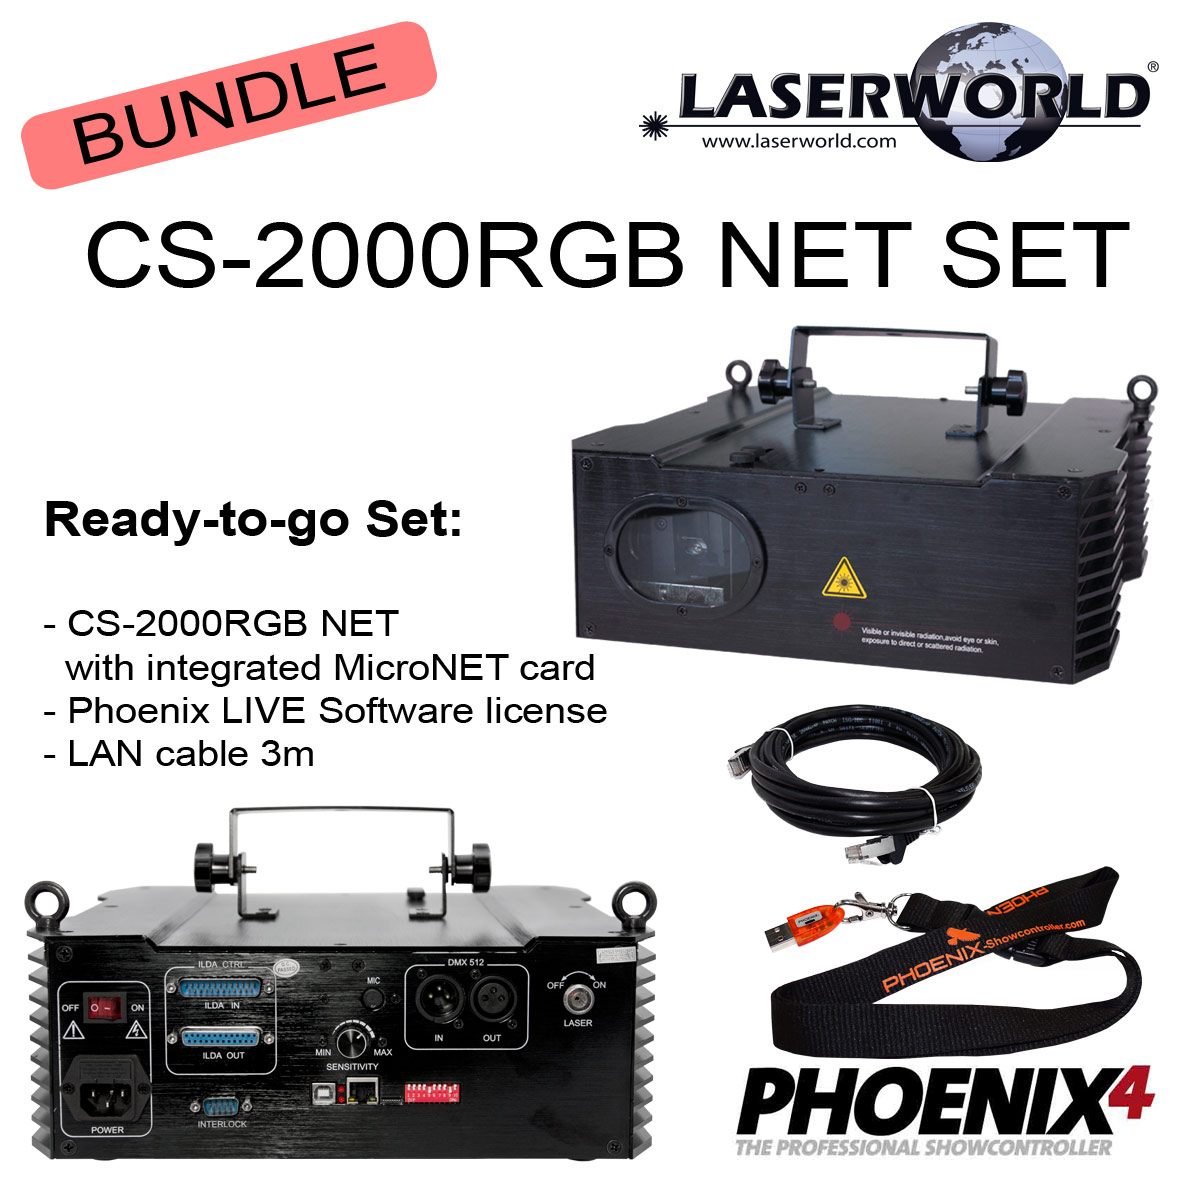 Laserworld CS-2000RGB NET SET